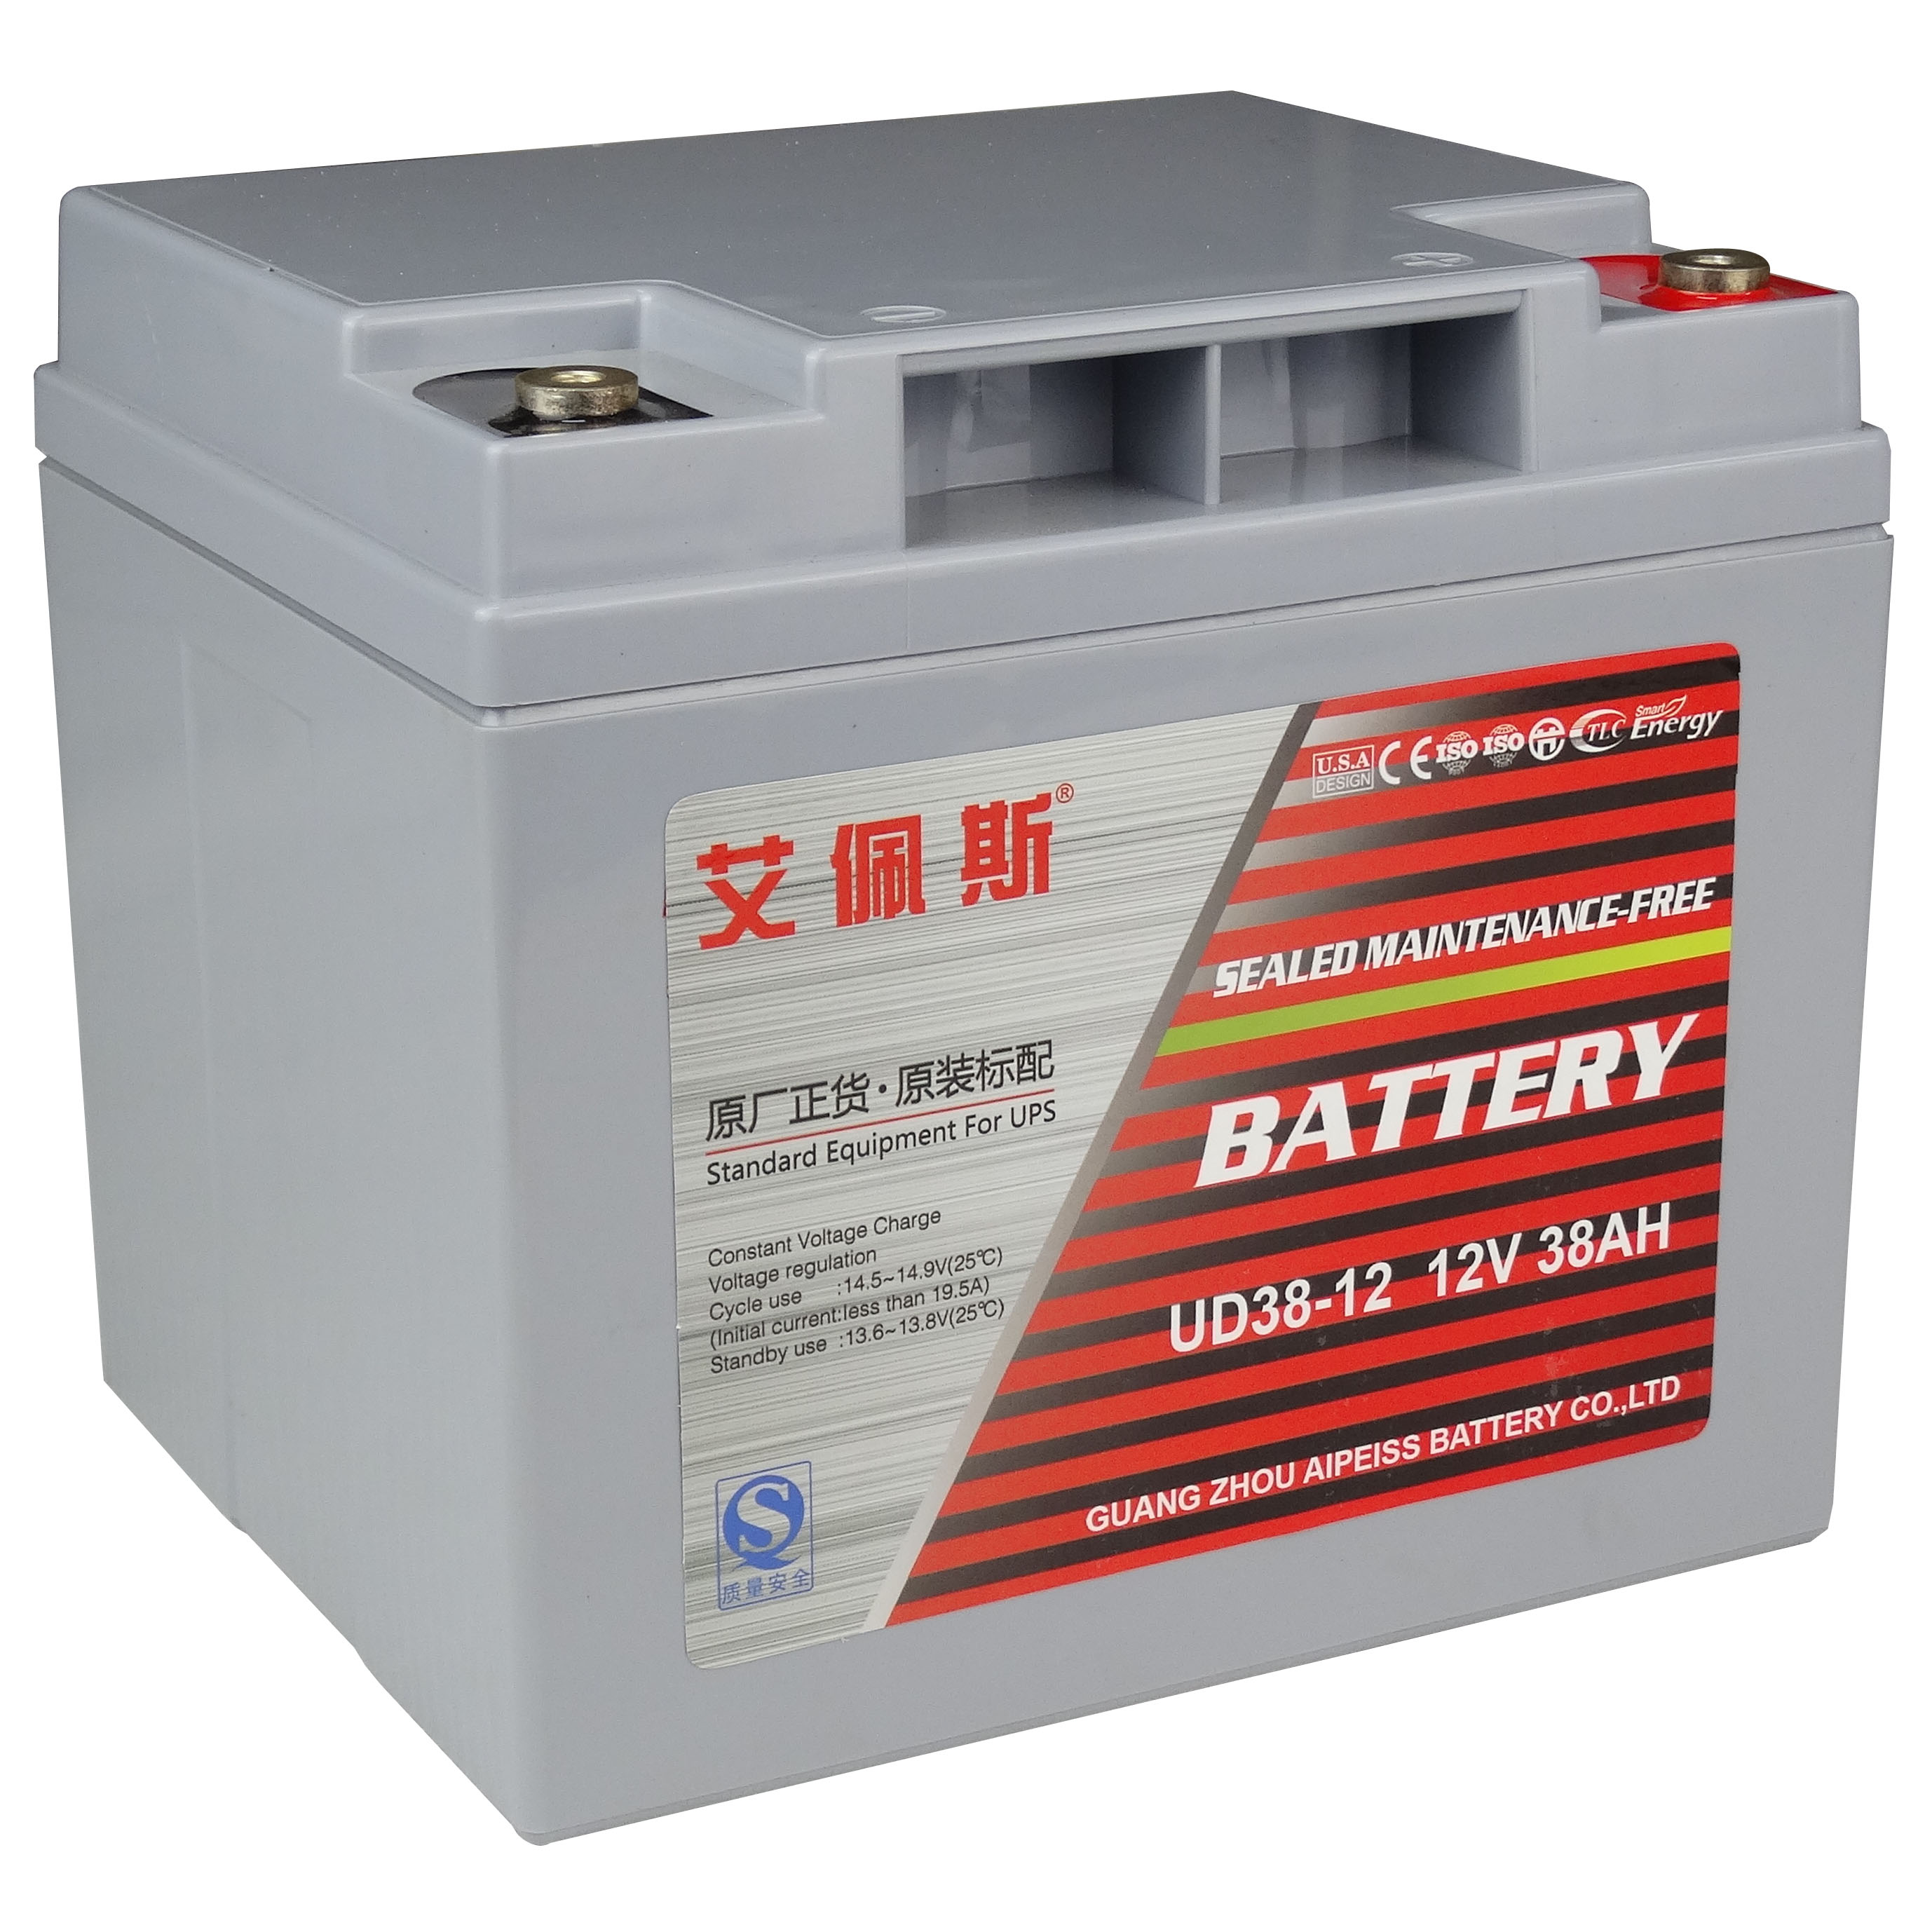 艾佩斯蓄电池UD38-12 艾佩斯蓄电池价格参数